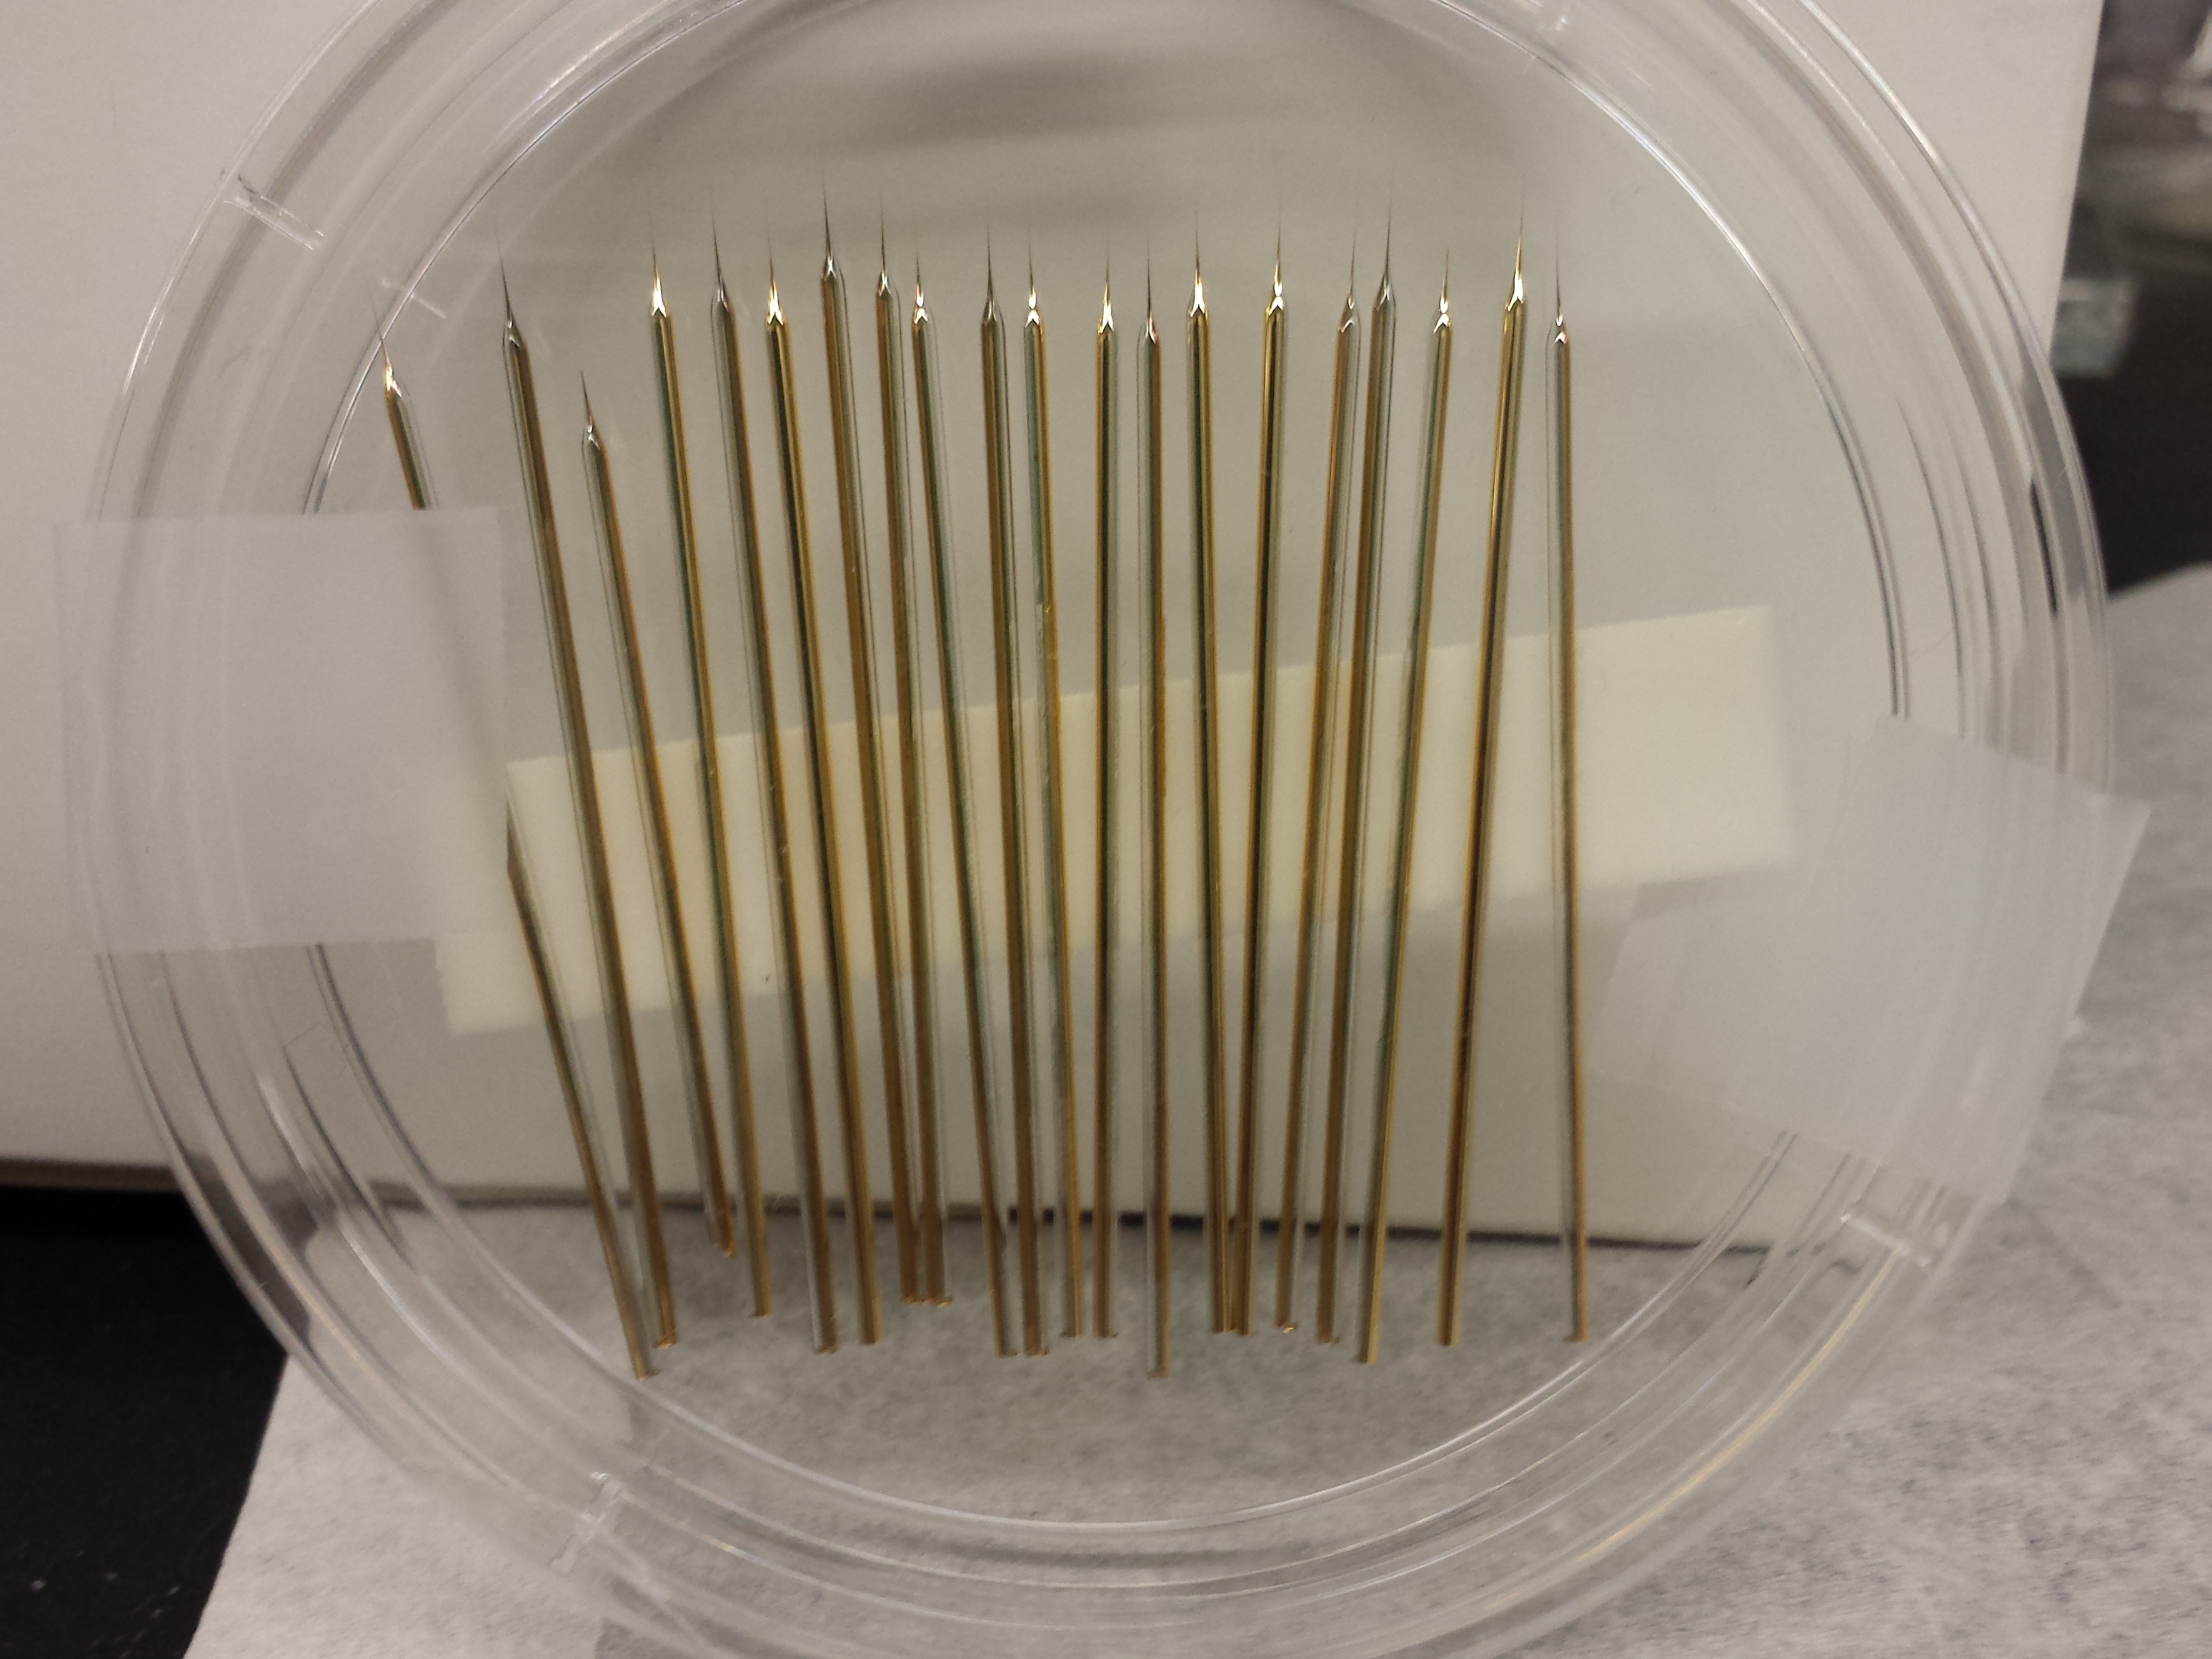 Gold-coated needles